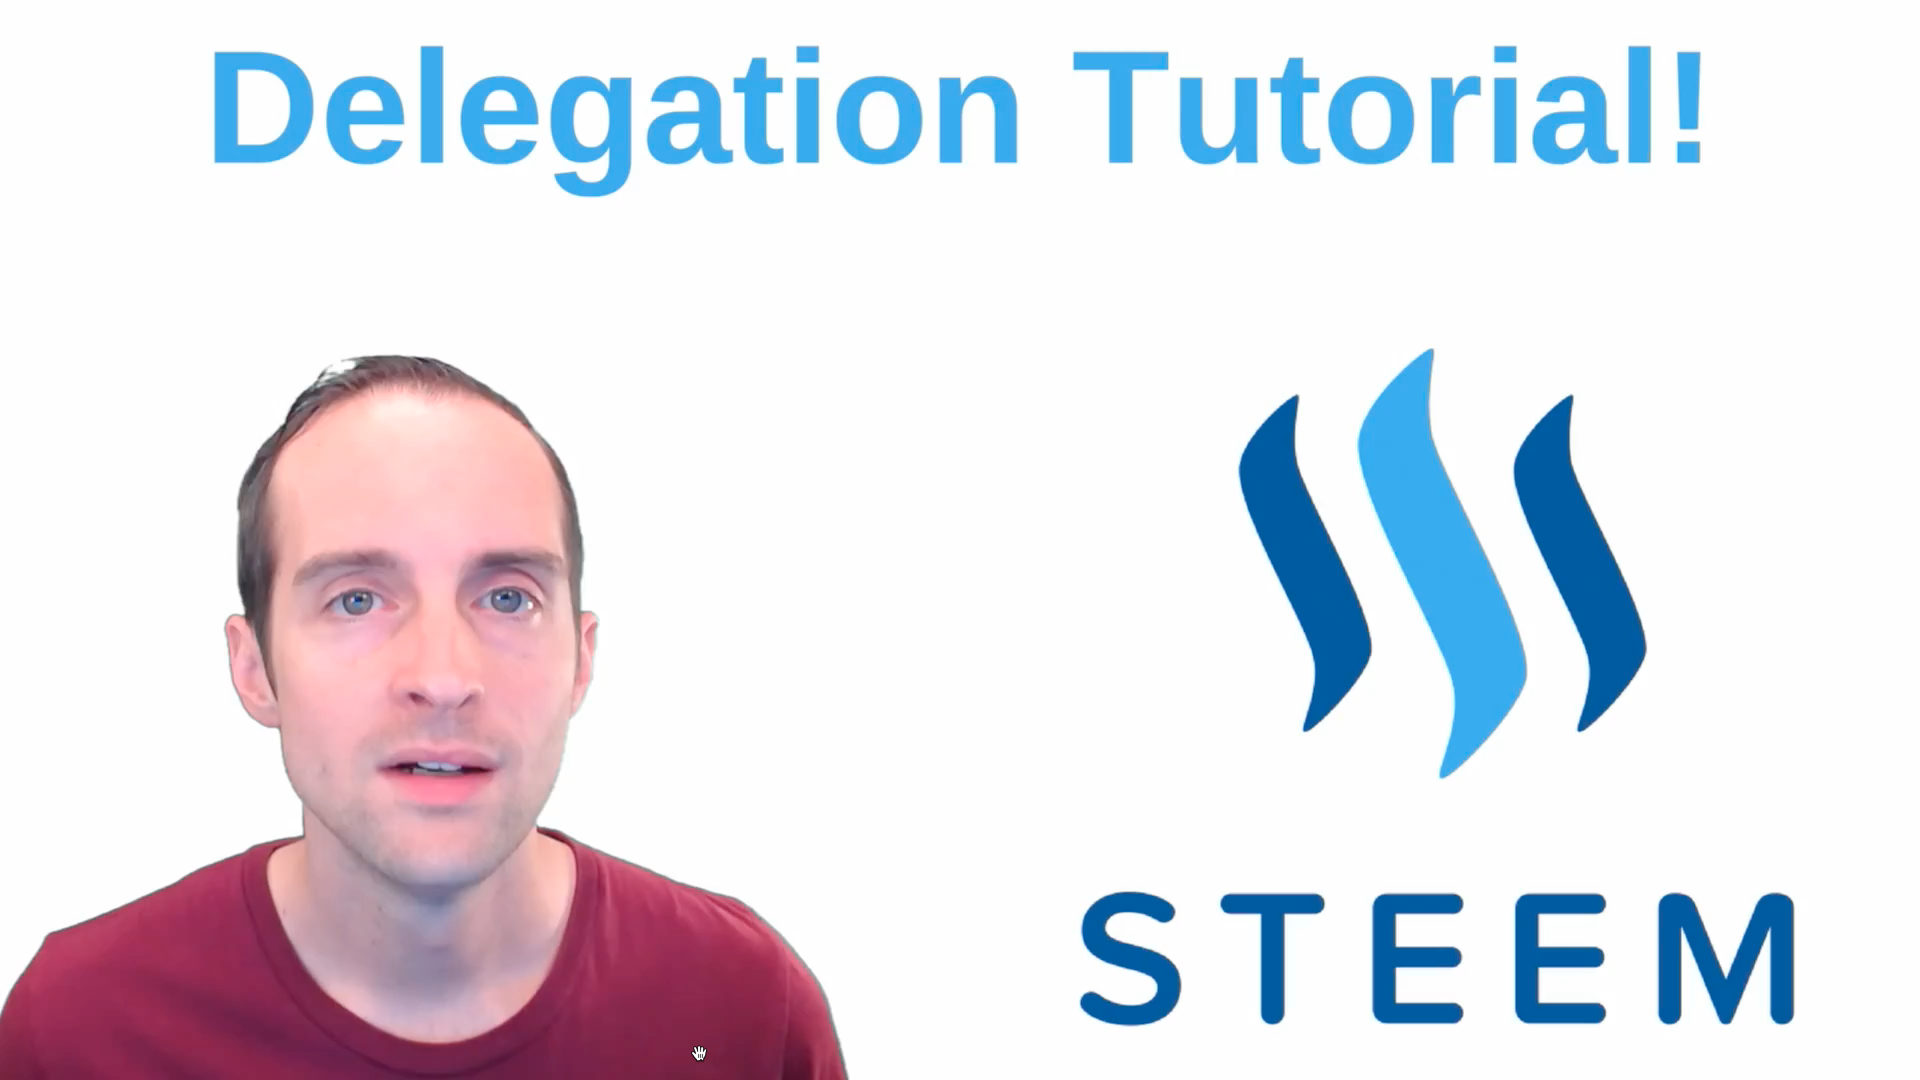 Steem power delegation tutorial.png